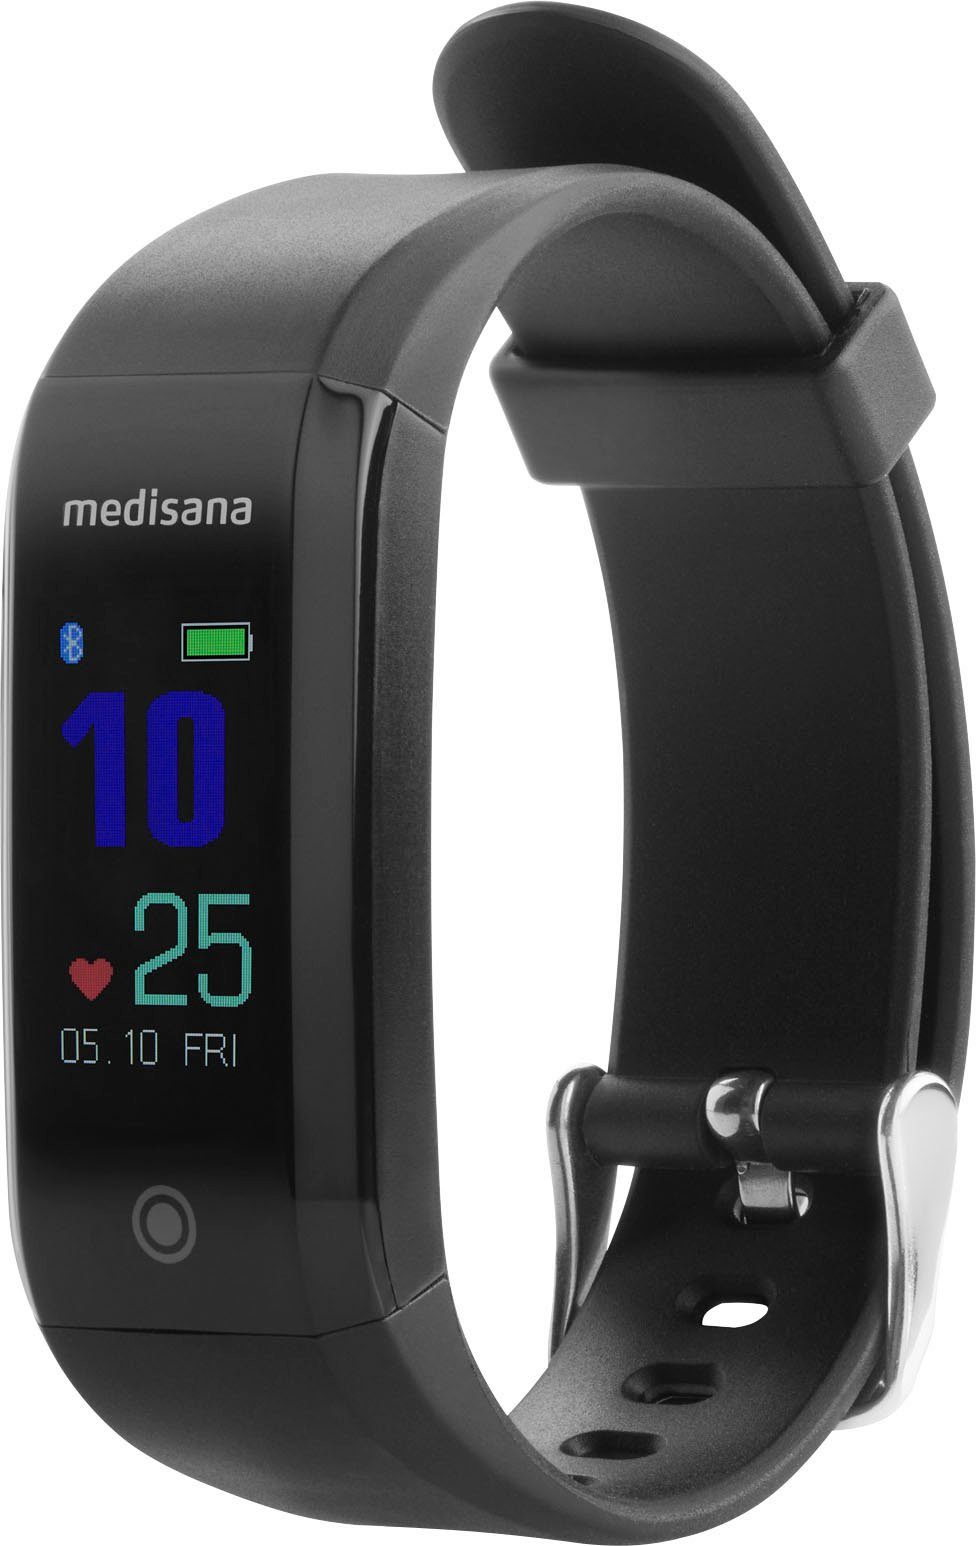 (mit Activity Tracker App VitaDock+ kostenfreie Armband), Run Medisana Vifit